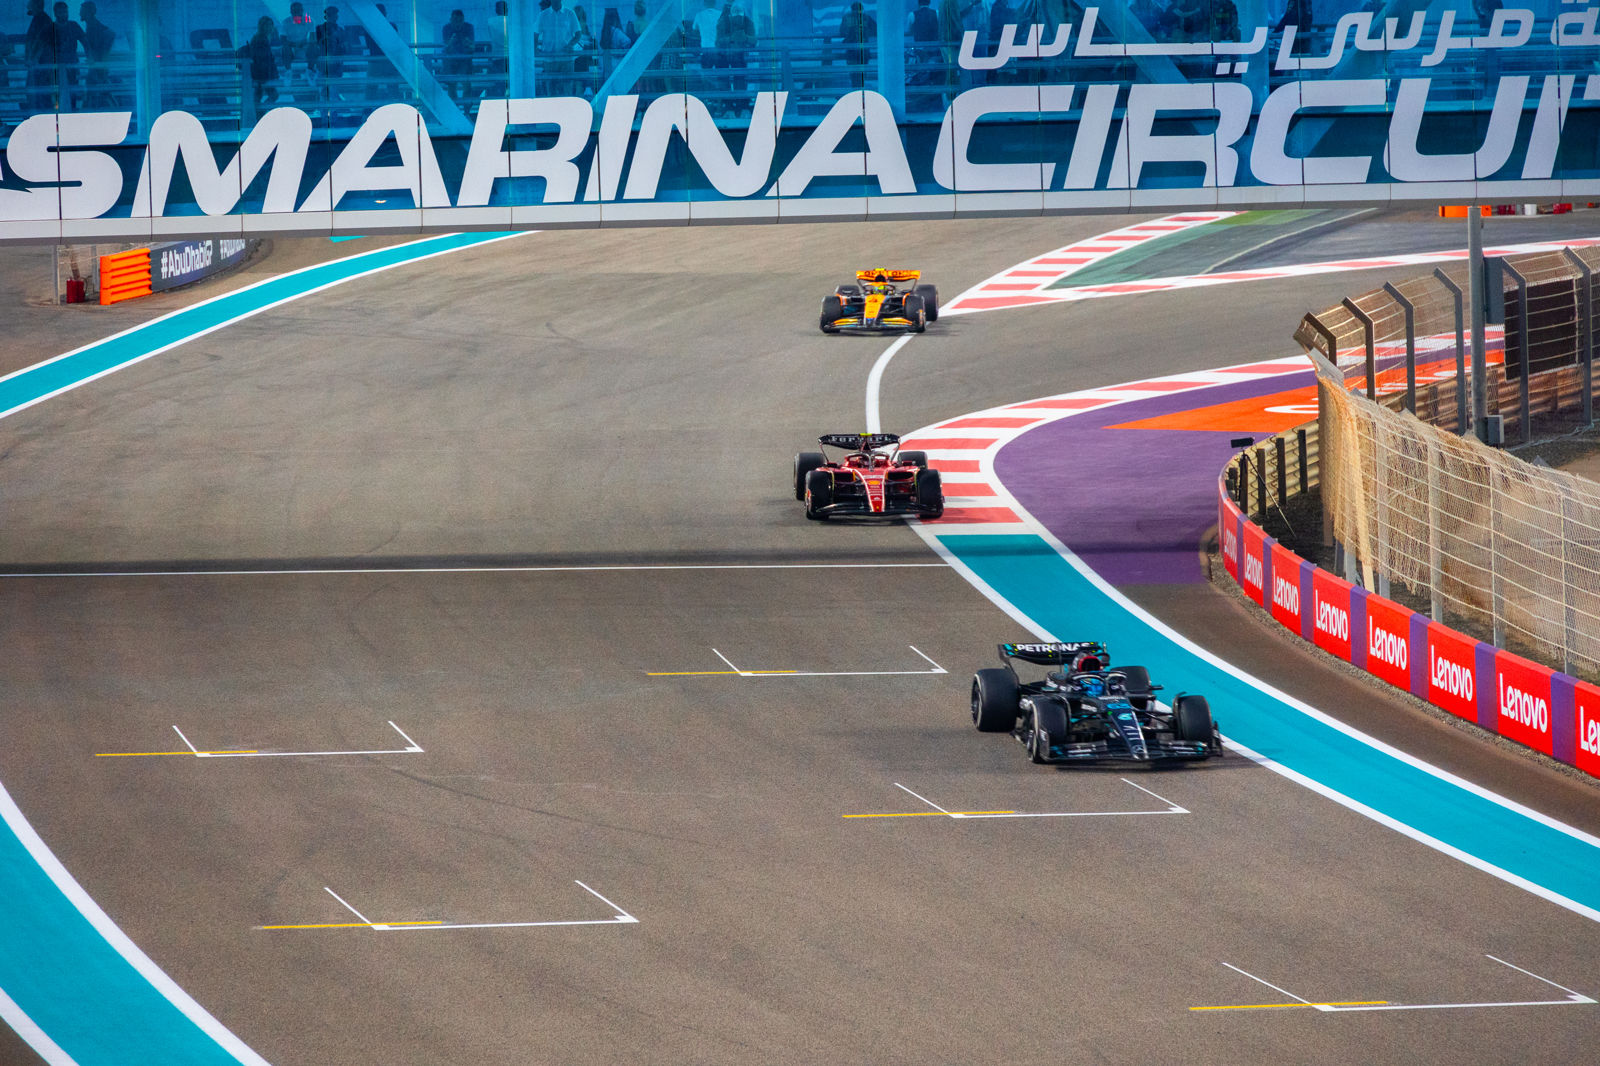 Formule 1 Abu Dhabi per Emirates Arrangement C - Verenigde Arabische Emiraten - Dubai - Formule 1 Reizen